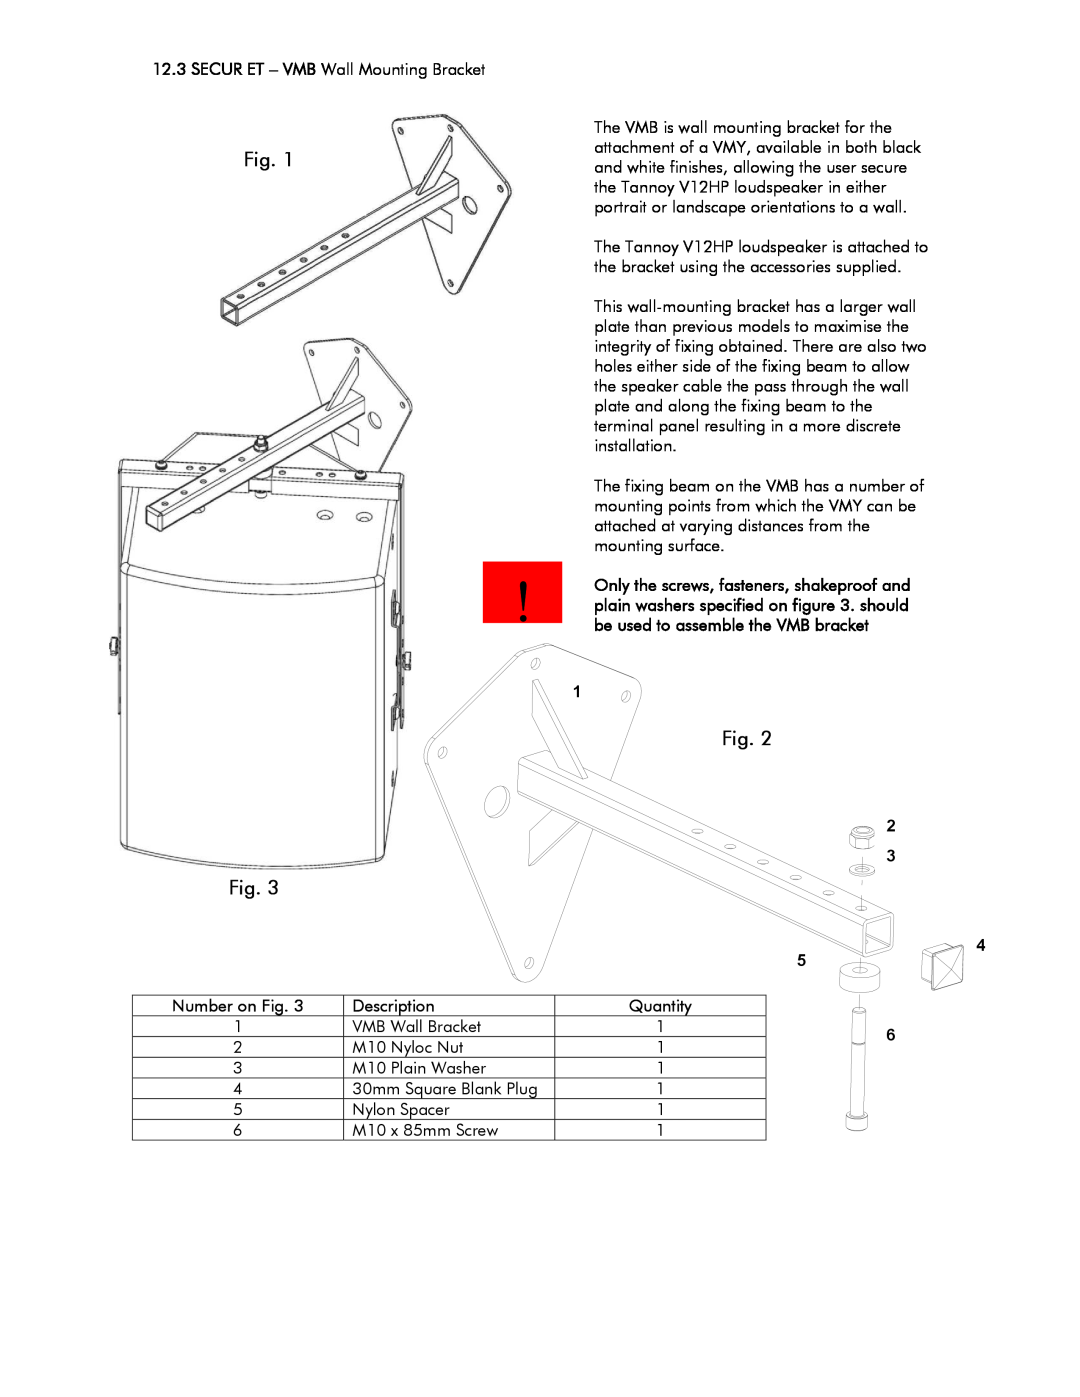 Tannoy V12HP user manual Fig, Description 